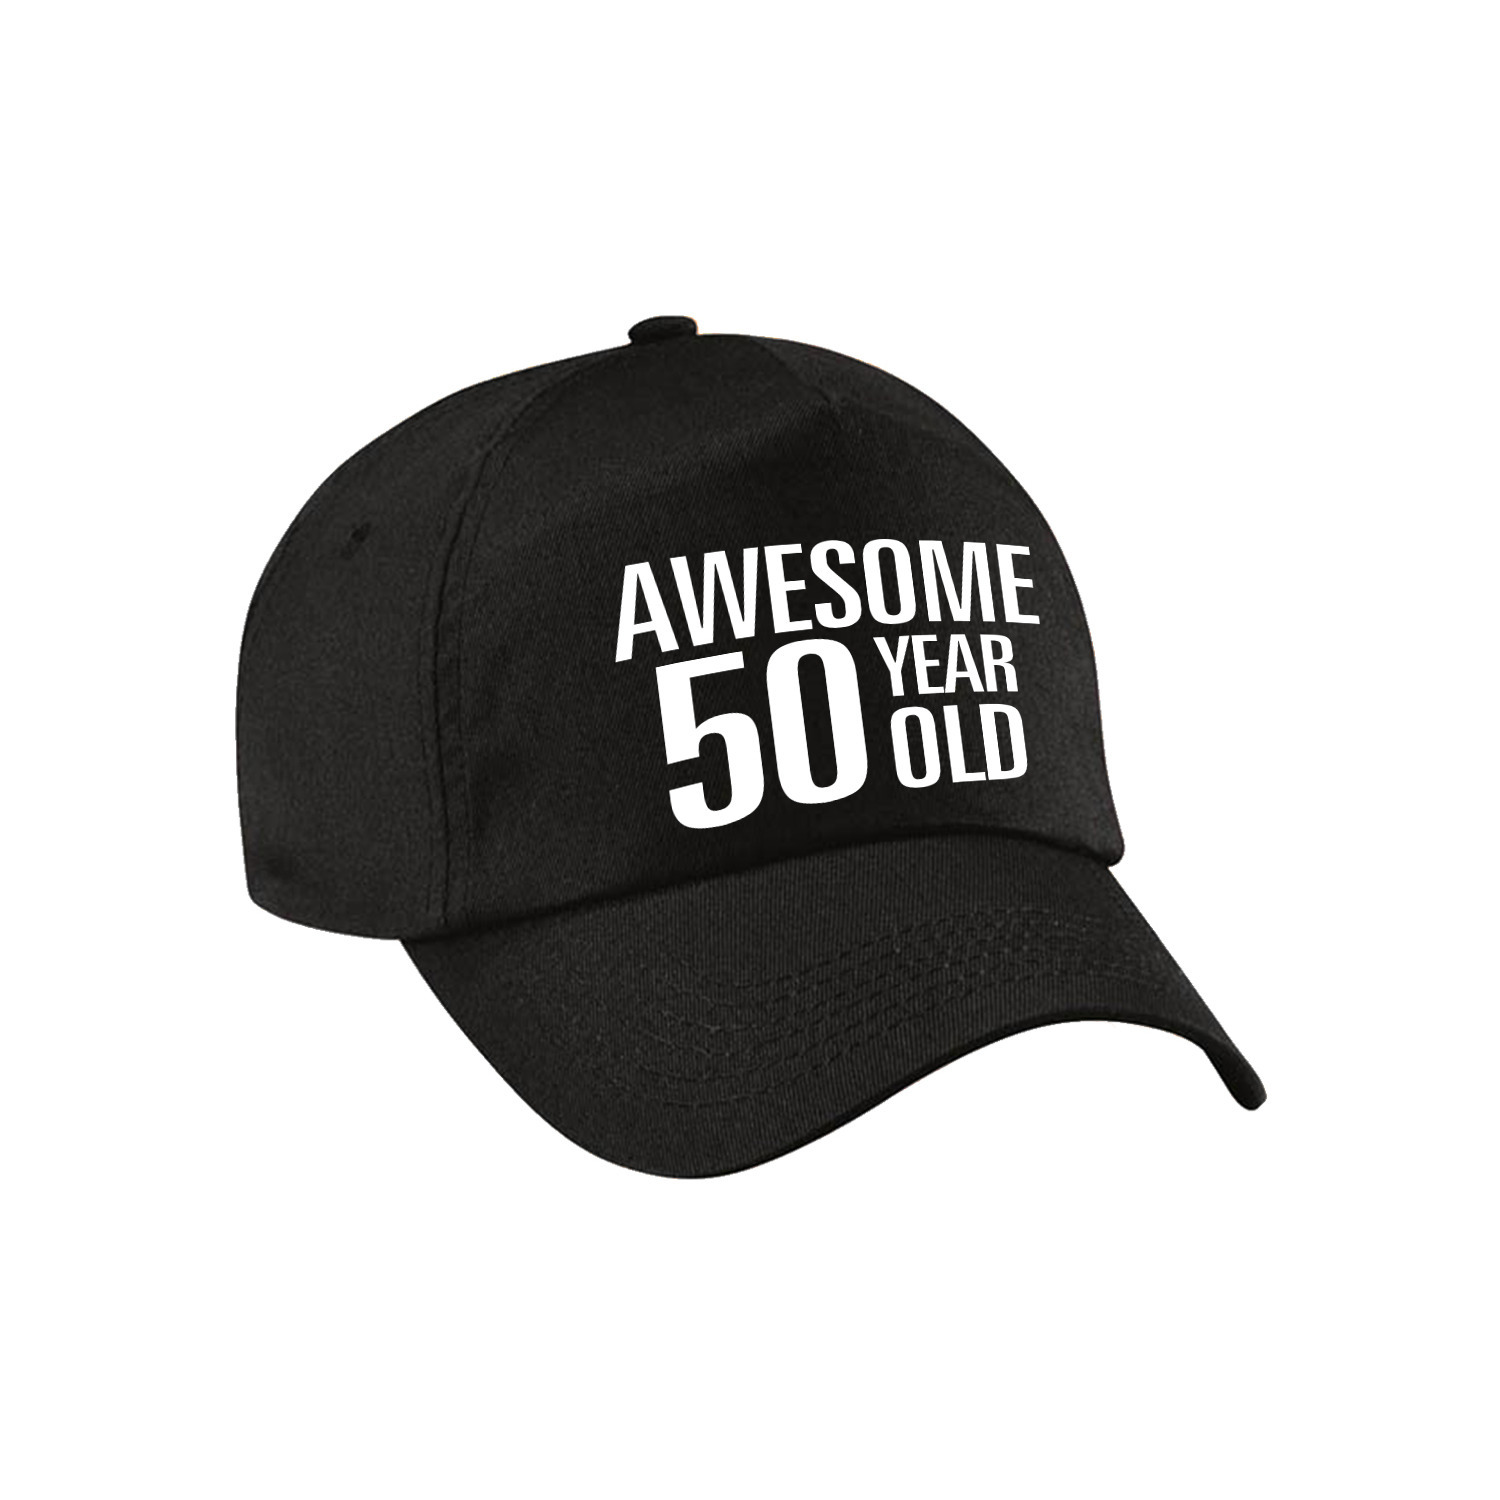 Awesome 50 year old verjaardag pet / cap zwart voor dames en heren